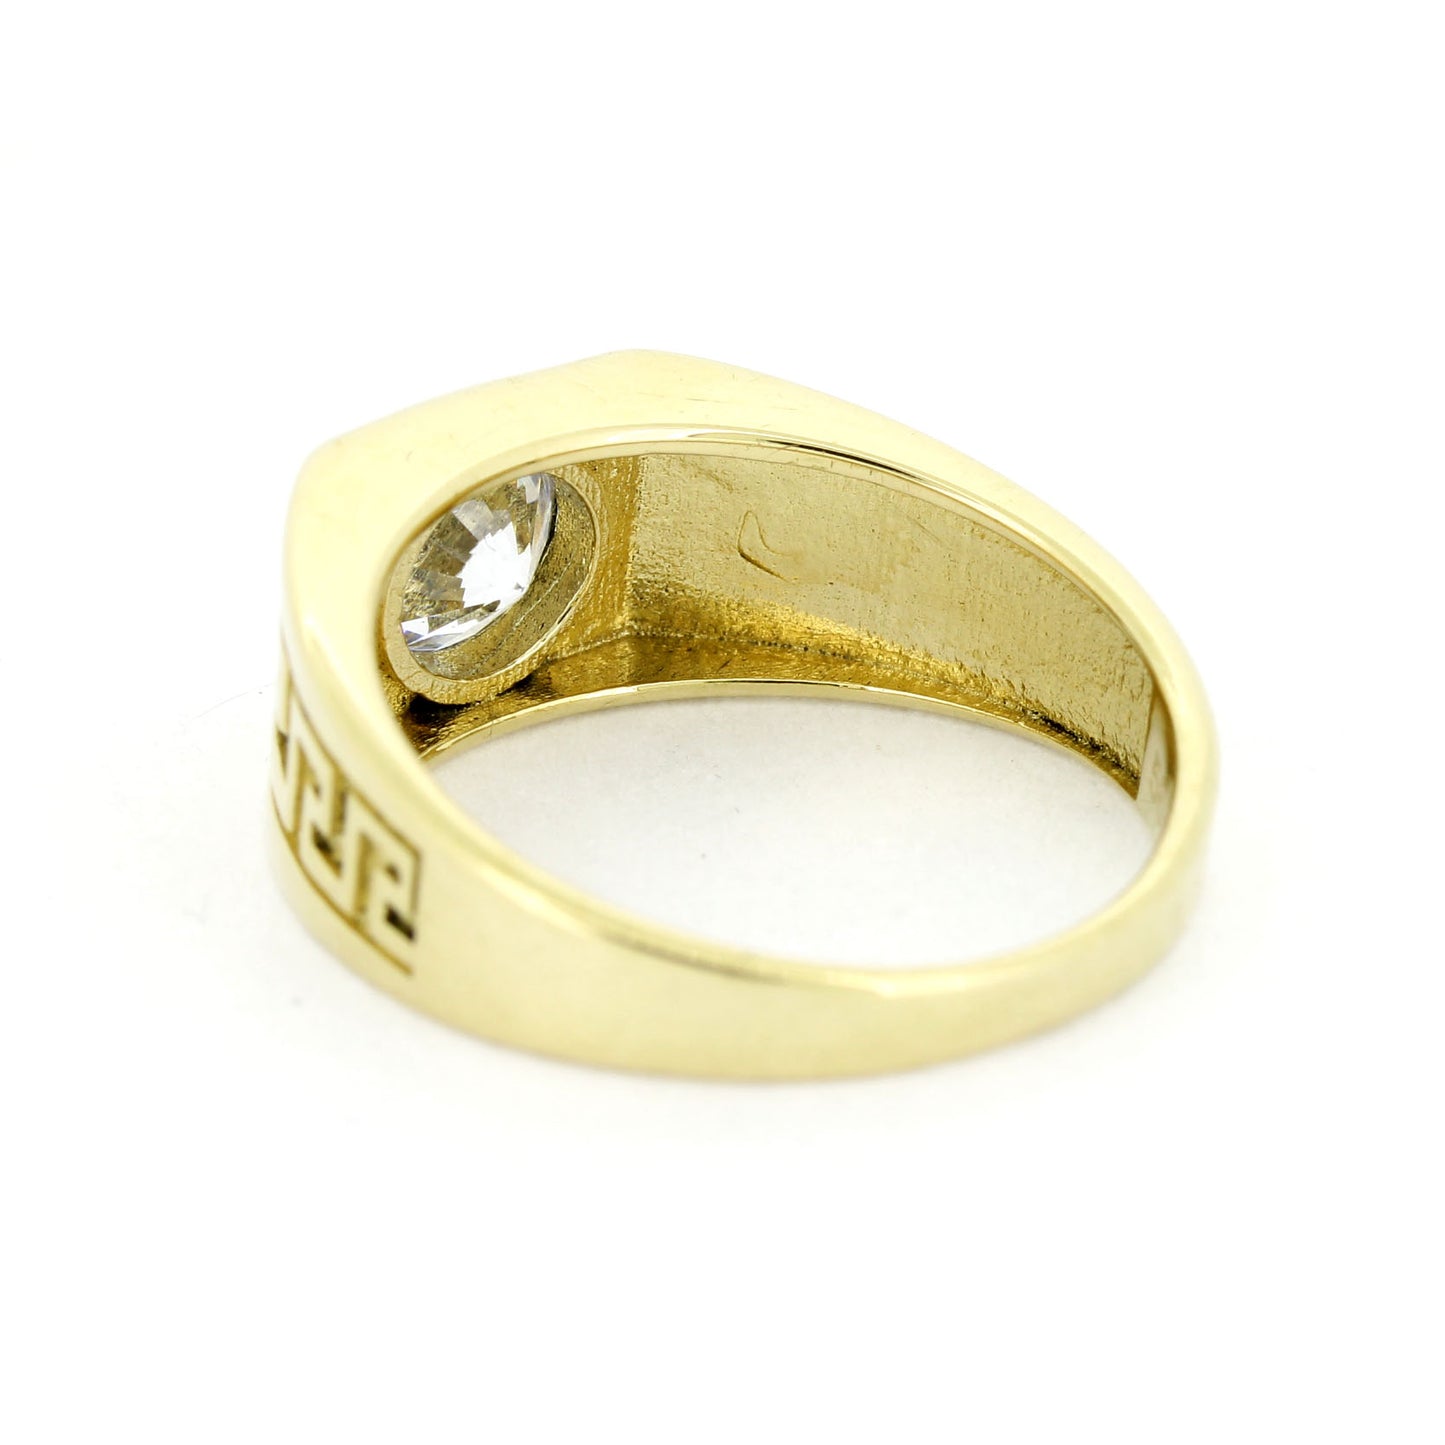 Ring mit Griechischem Schlüsselmuster 585er Gelbgold - Zirkonia Stein Wert 350,-